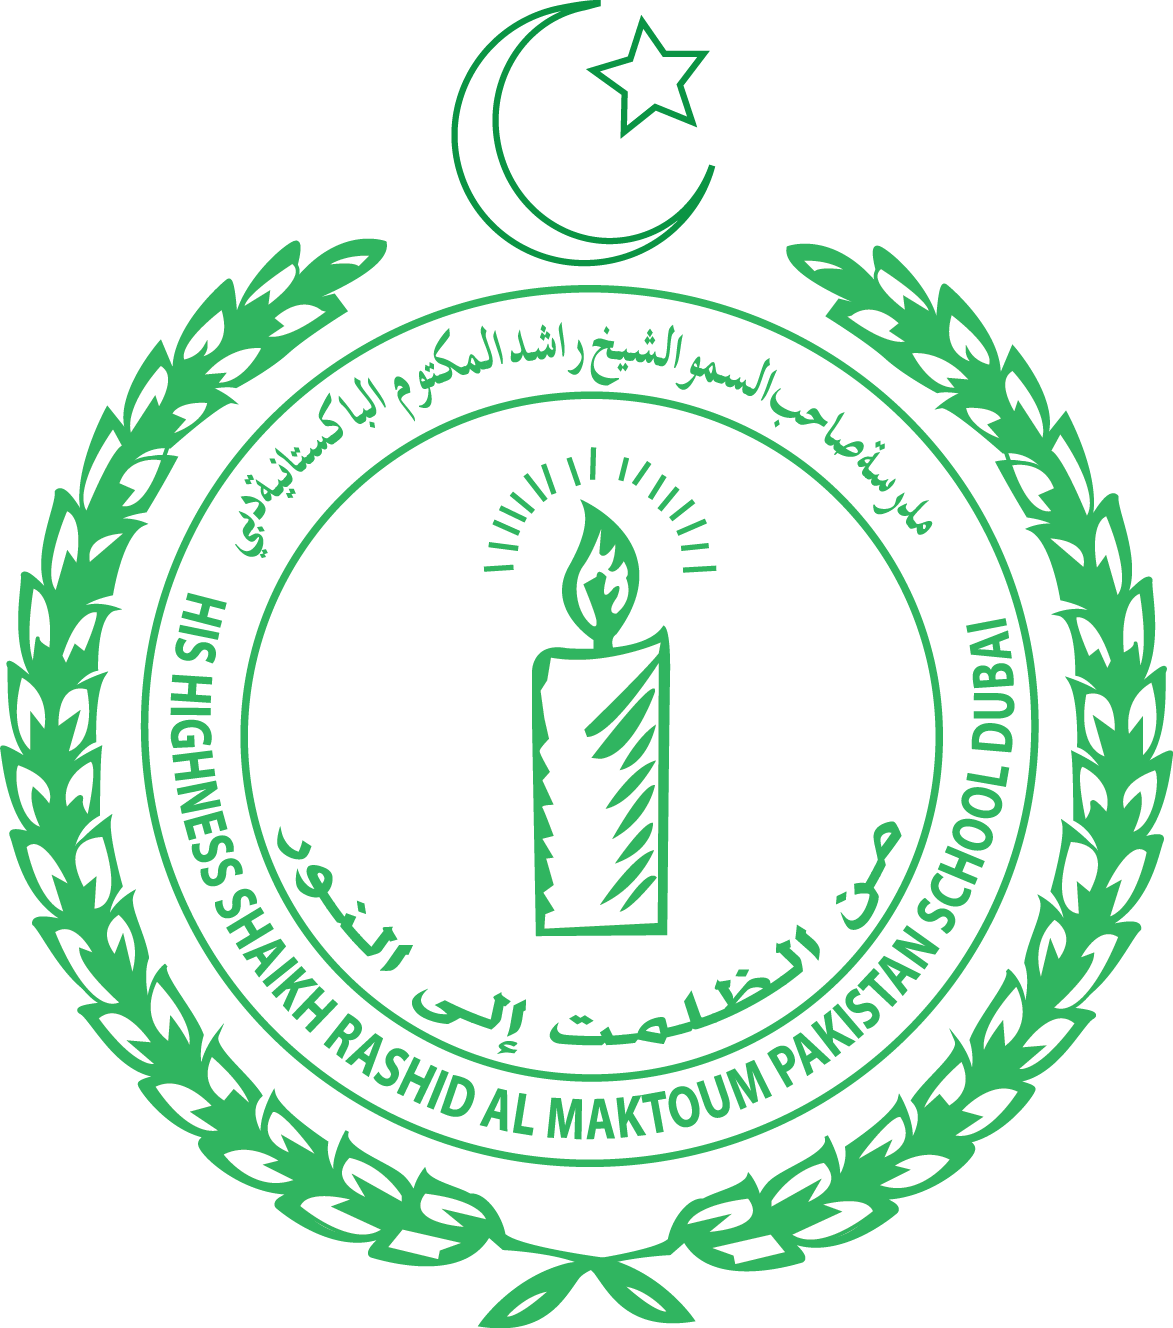 H.H. Shaikh Rashid Al Maktoum Pakistani School